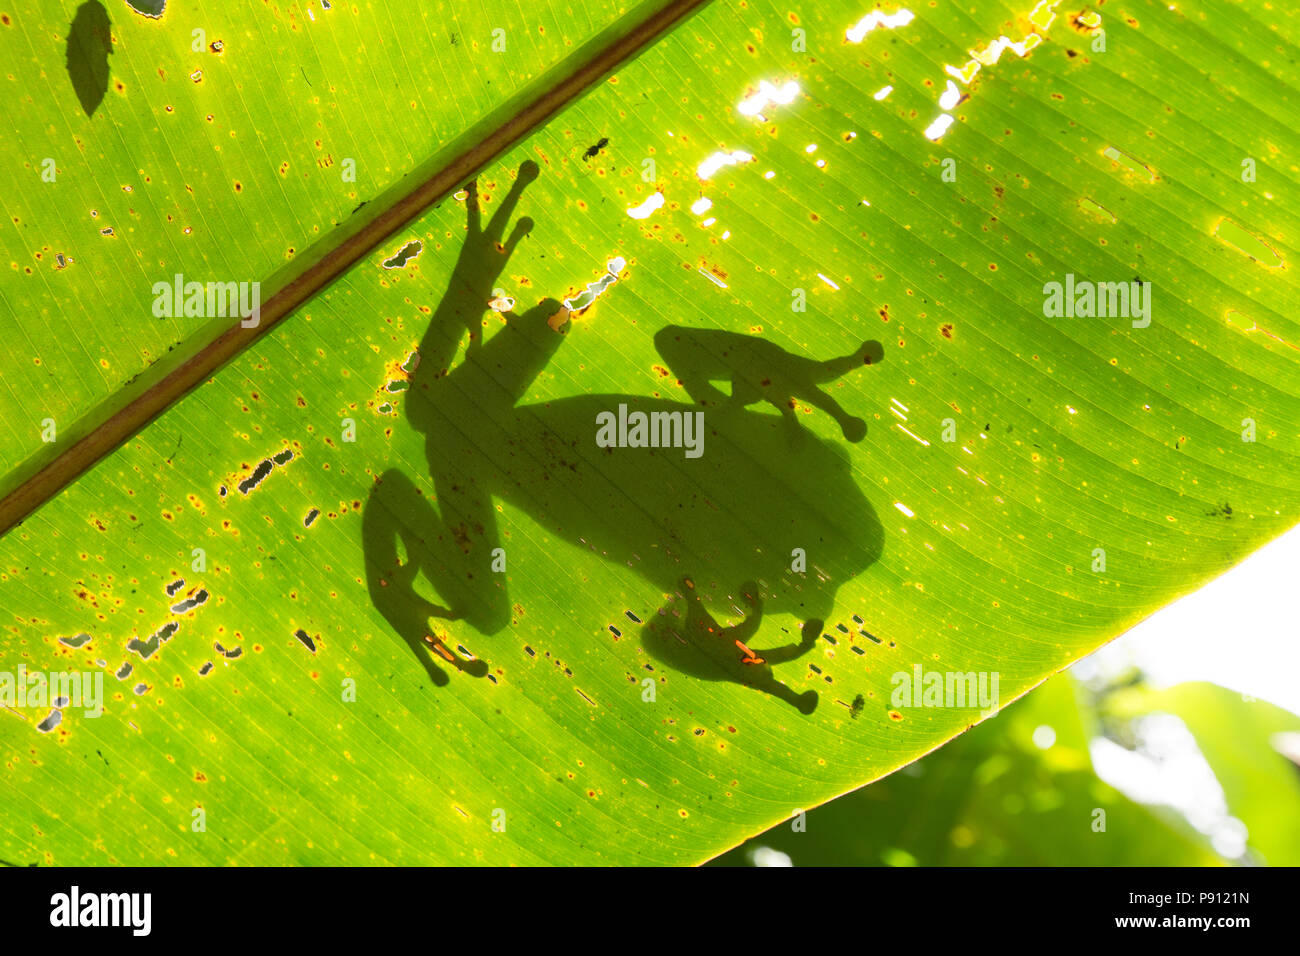 Un grand arbre grenouille dans la jungle du Suriname près de Bakhuis vu ici par le biais d'une feuille de palmier. La recherche indique qu'il s'agit d'Phyllomedusa bicolor, als Banque D'Images